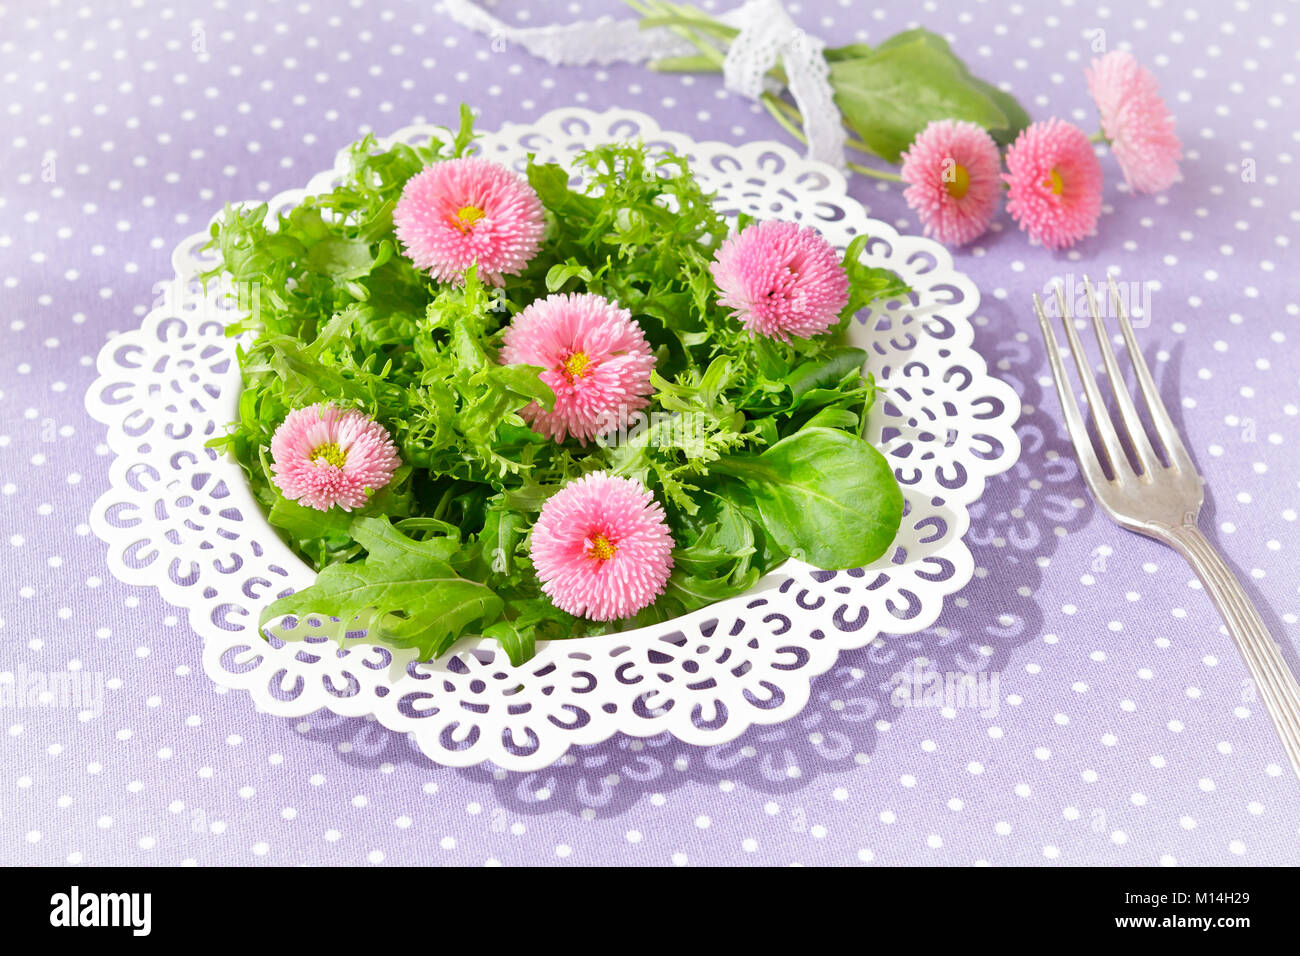 Piastra bianca con una insalata verde mista le foglie di lattuga e commestibili fiori a margherita, insieme con una forcella di vintage su un nostalgico sfondo lilla Foto Stock